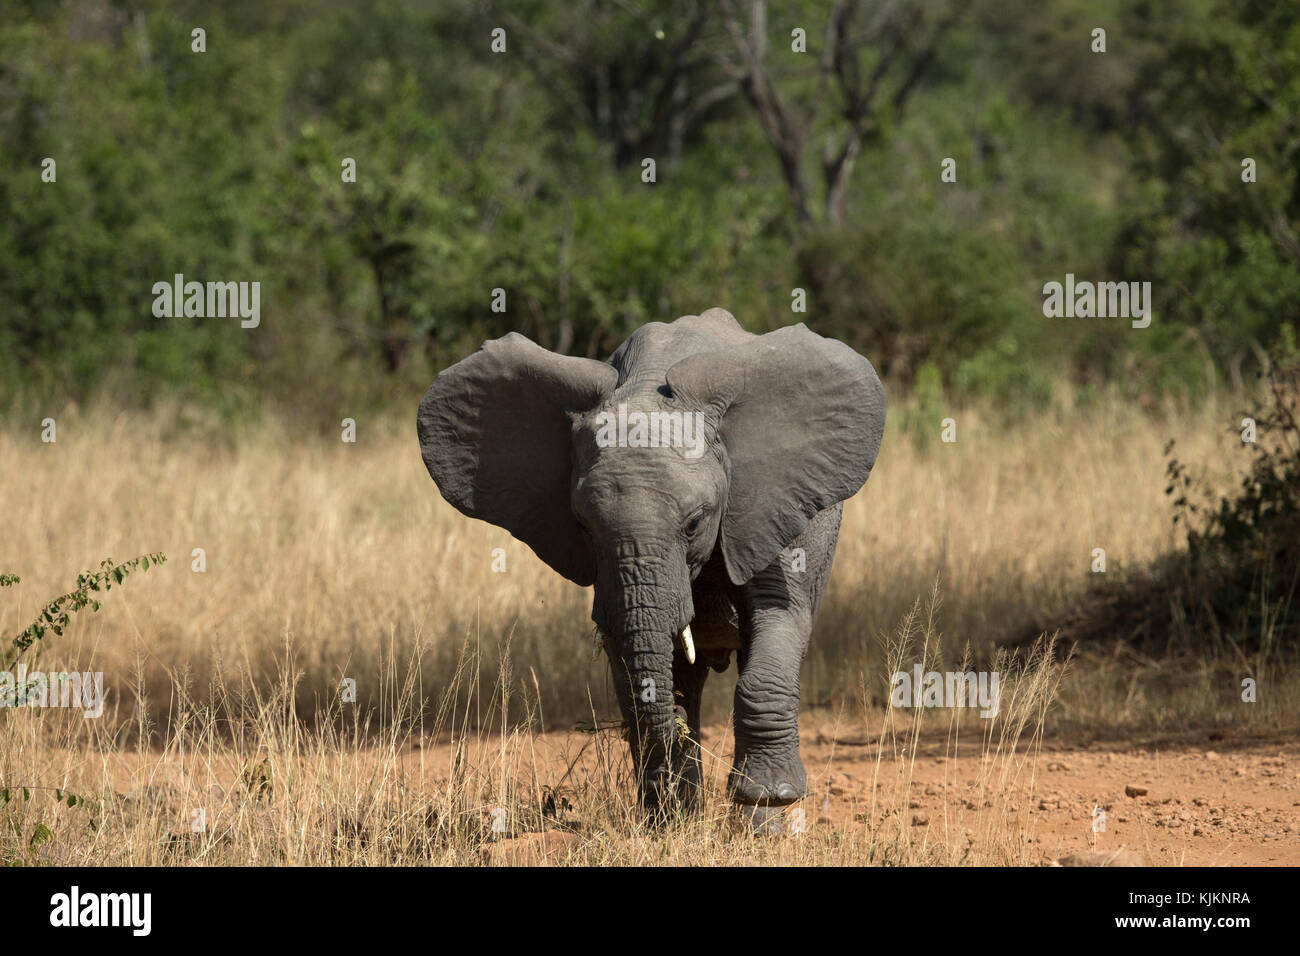 Parque Nacional del Serengeti. Elefante africano (Loxodonta africana). La República Unida de Tanzanía. Foto de stock